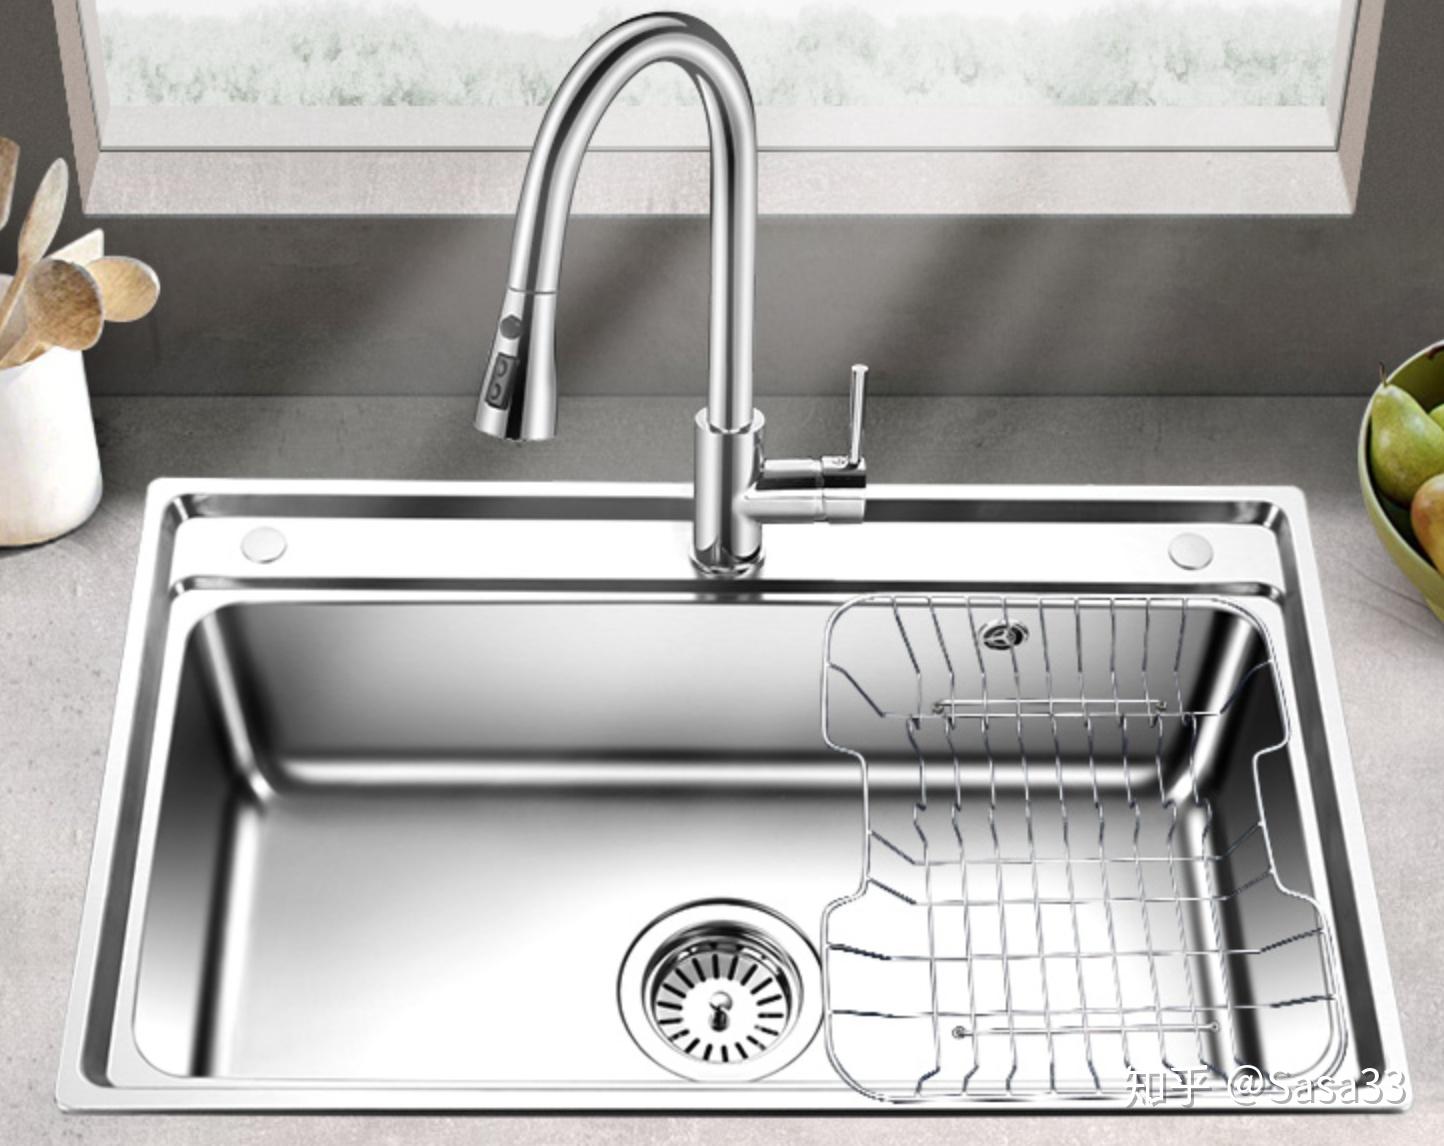 不锈钢水槽应该怎么选?如何安装?步骤及流程要点详悉 - 厨房 - 装一网